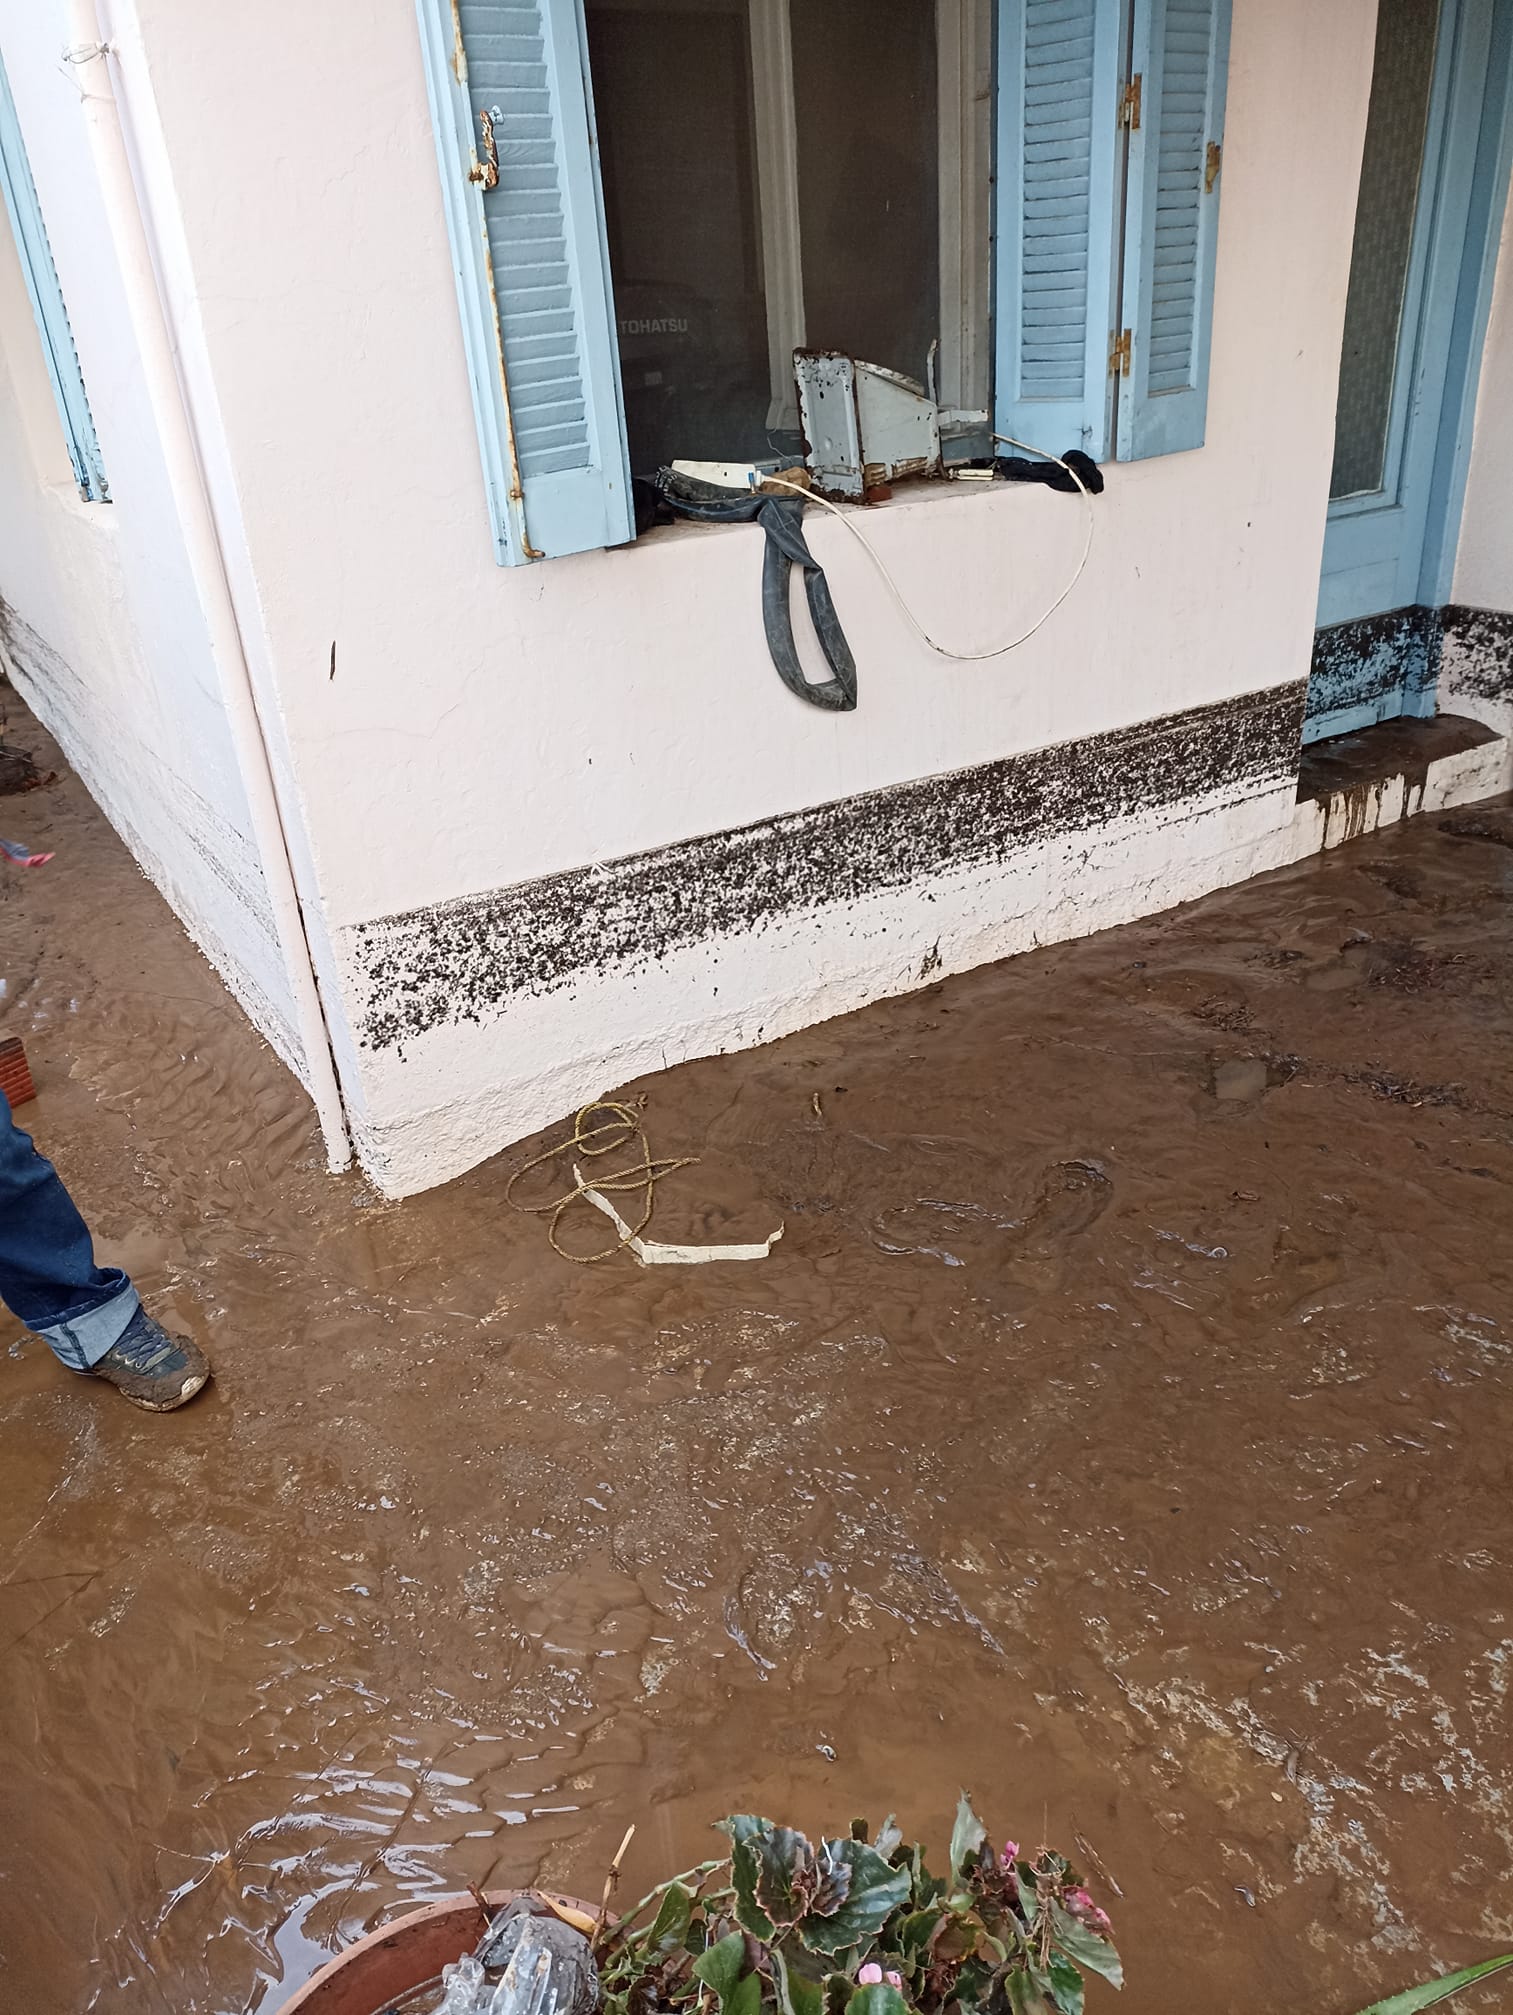 Β. Εύβοια: Ξεκινούν οι αυτοψίες στα σπίτια που πλημμύρισαν – Αναμένεται νομοθετική ρύθμιση και για τις δεύτερες κατοικίες